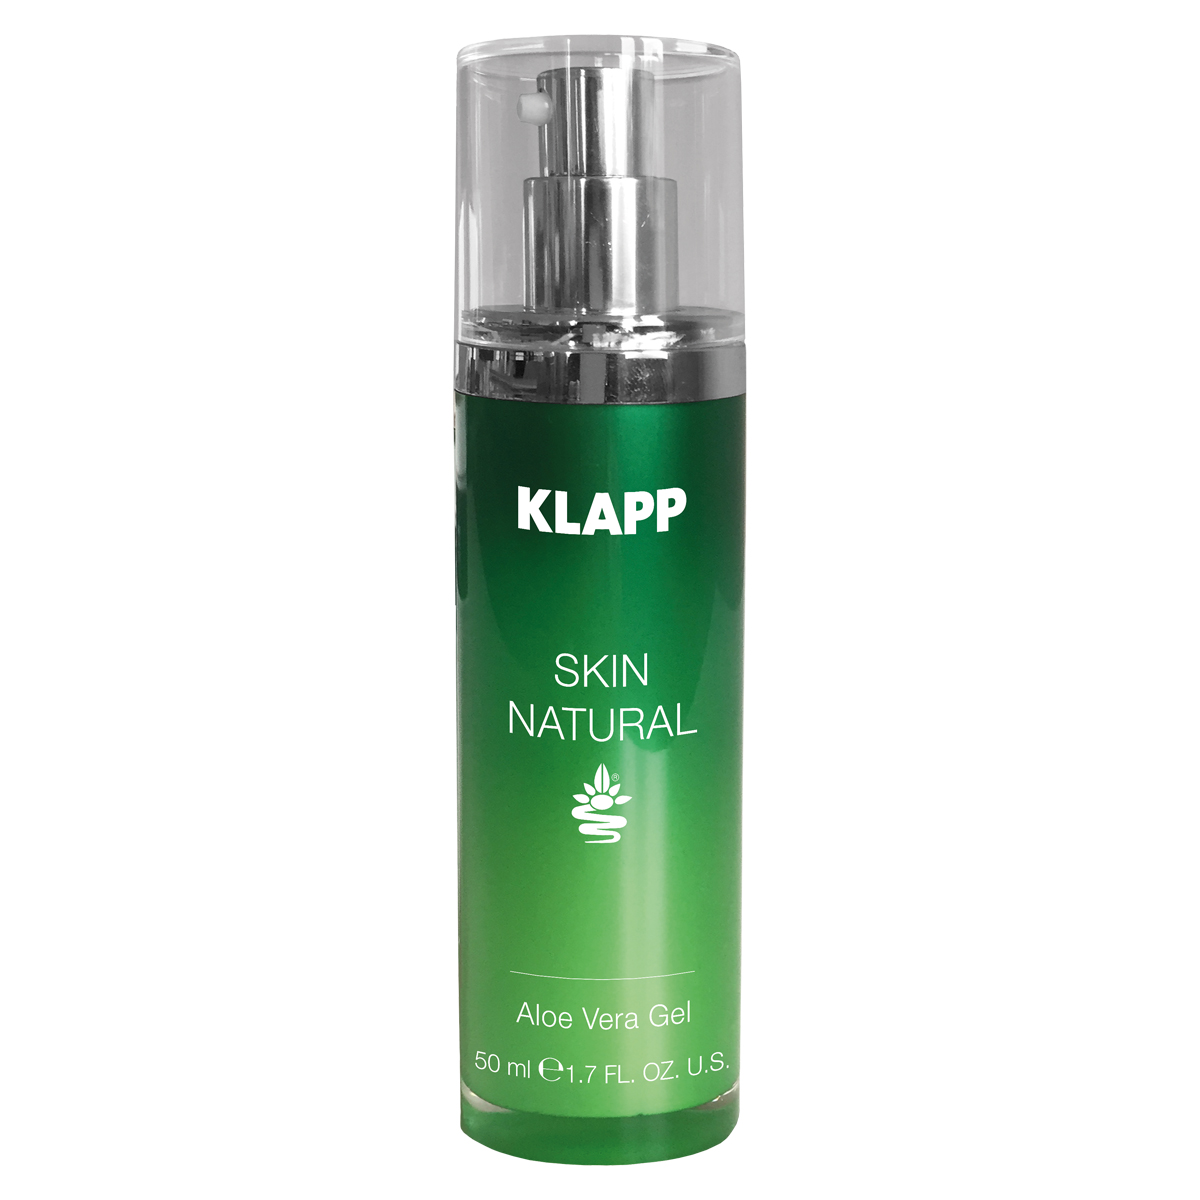 KLAPP Skin Natural Aloe Vera Gel 50 ml